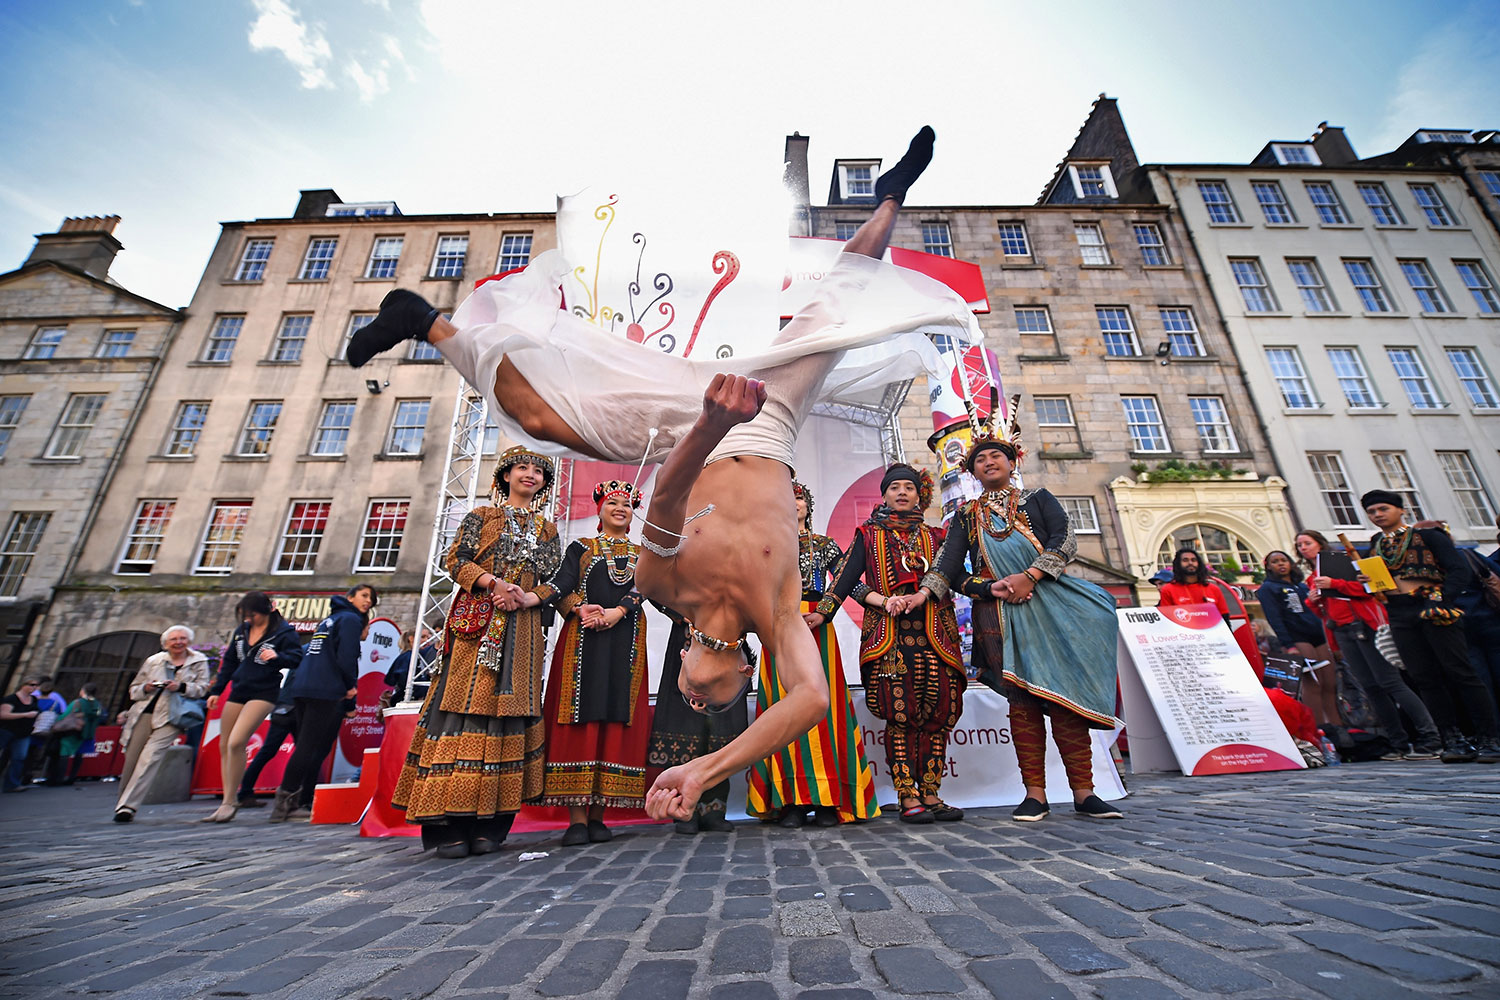 Edimburgo abre el telón al Festival Fringe de artes escénicas